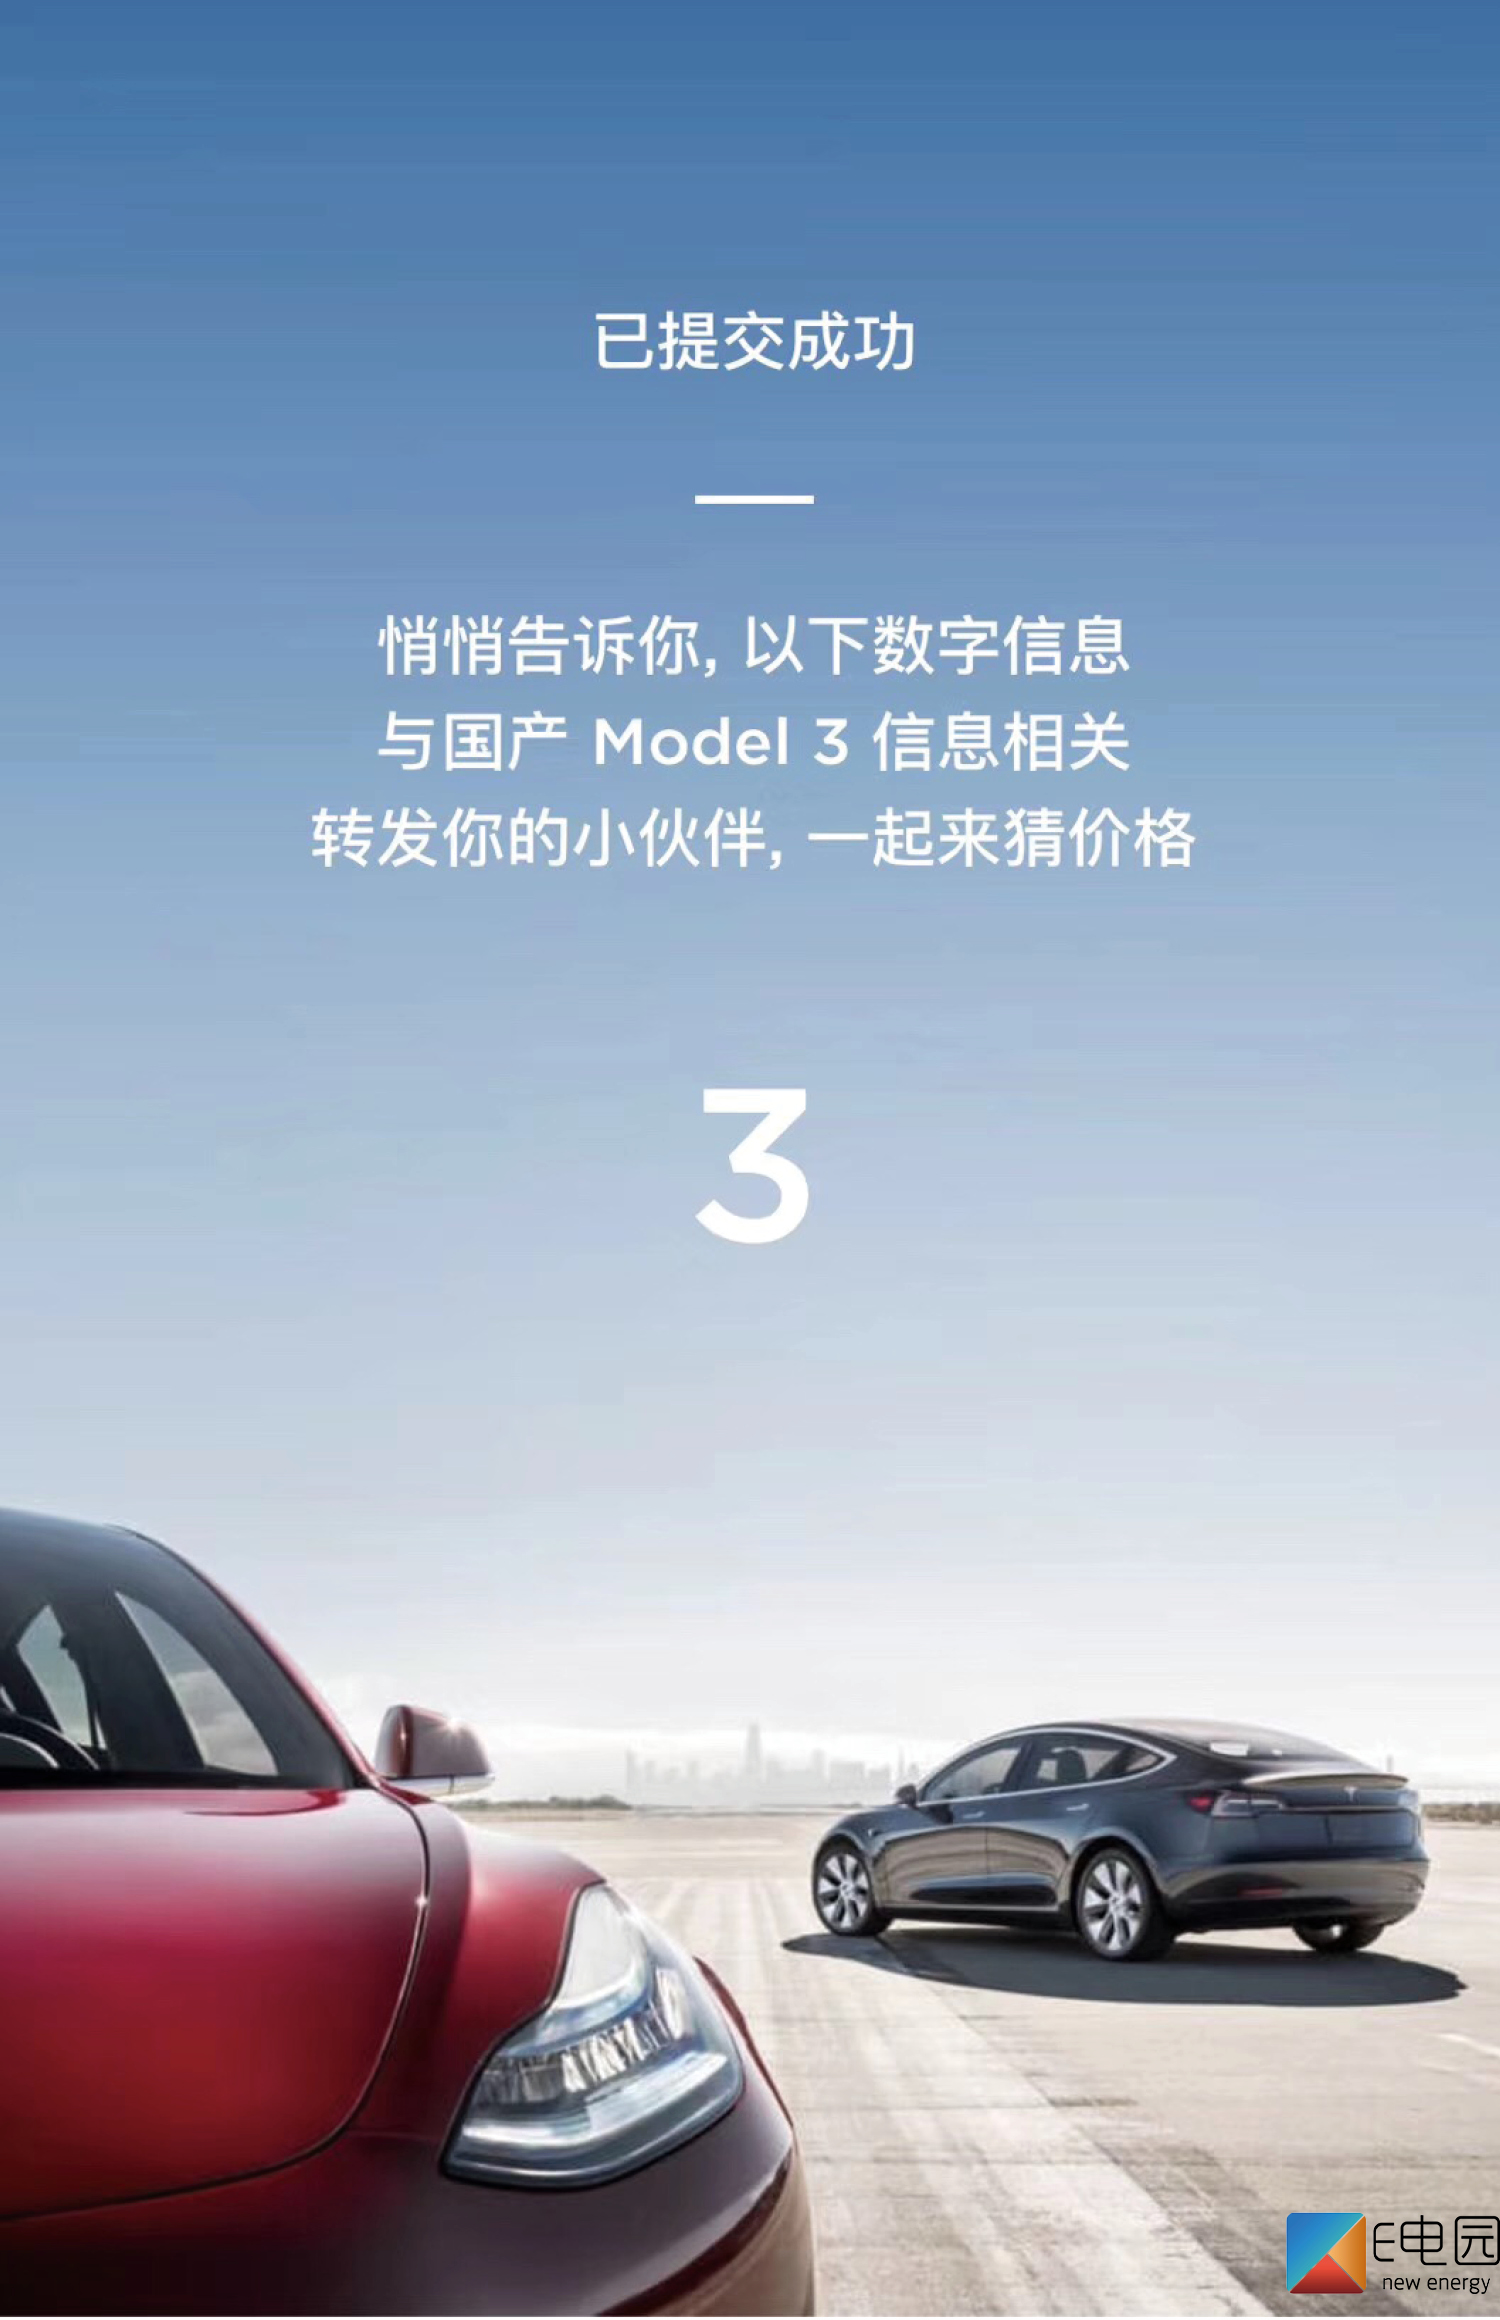 5月31日公布国产model 3定价 特斯拉即将官宣